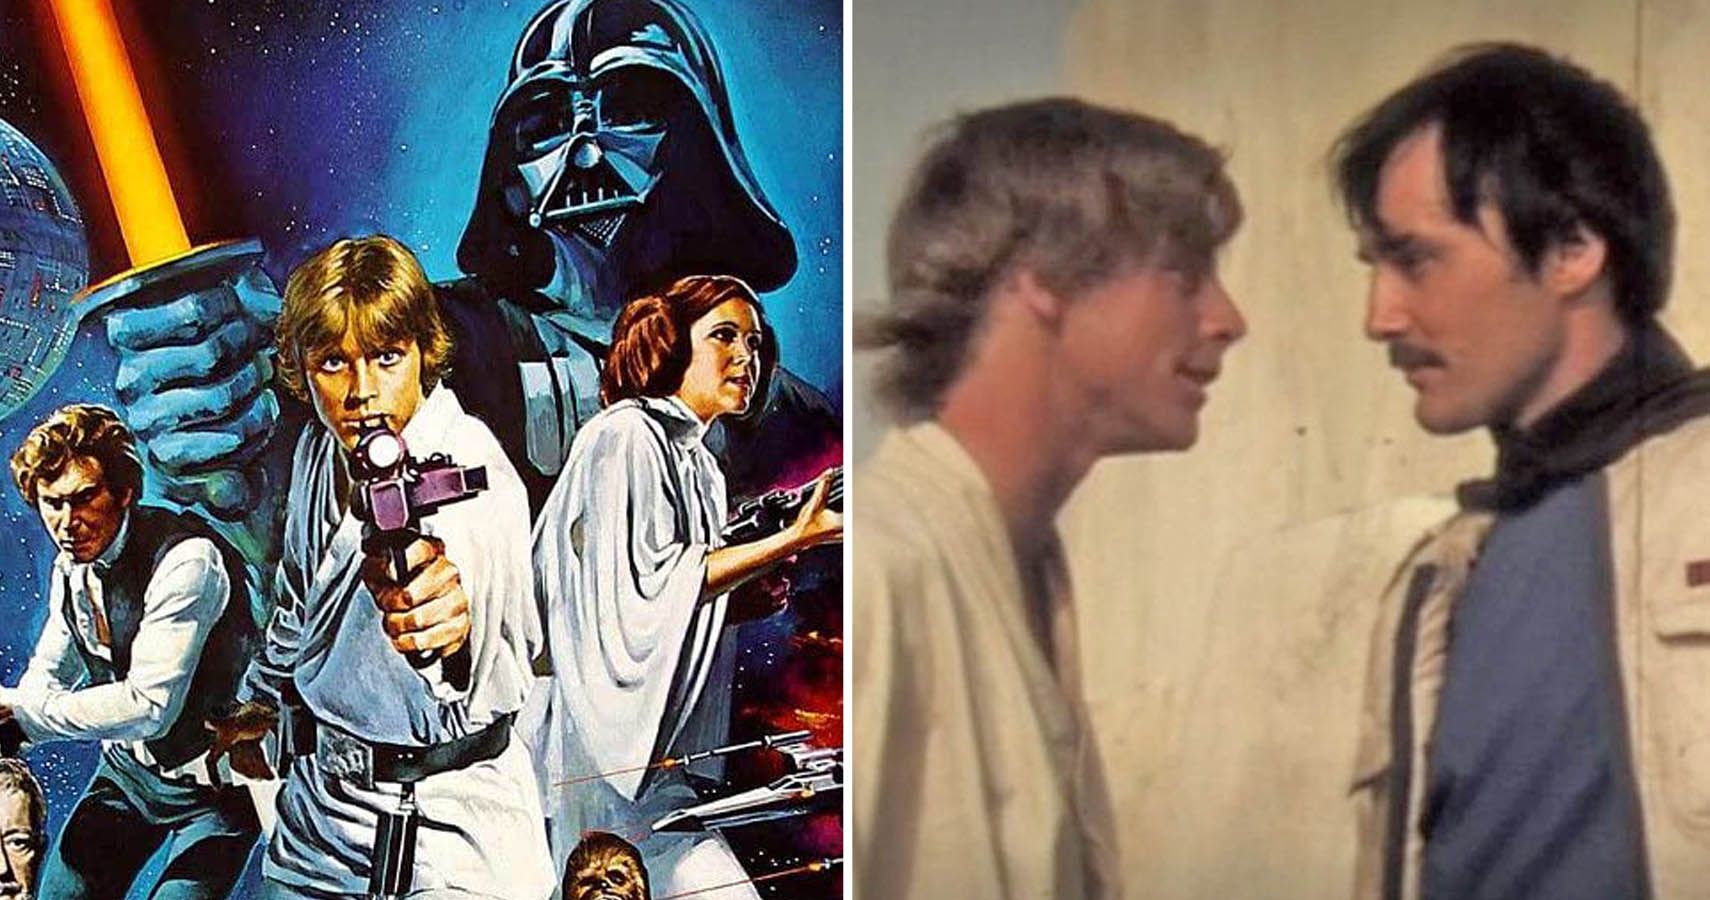 Star Wars: A New Hope movie poster & Luke scene